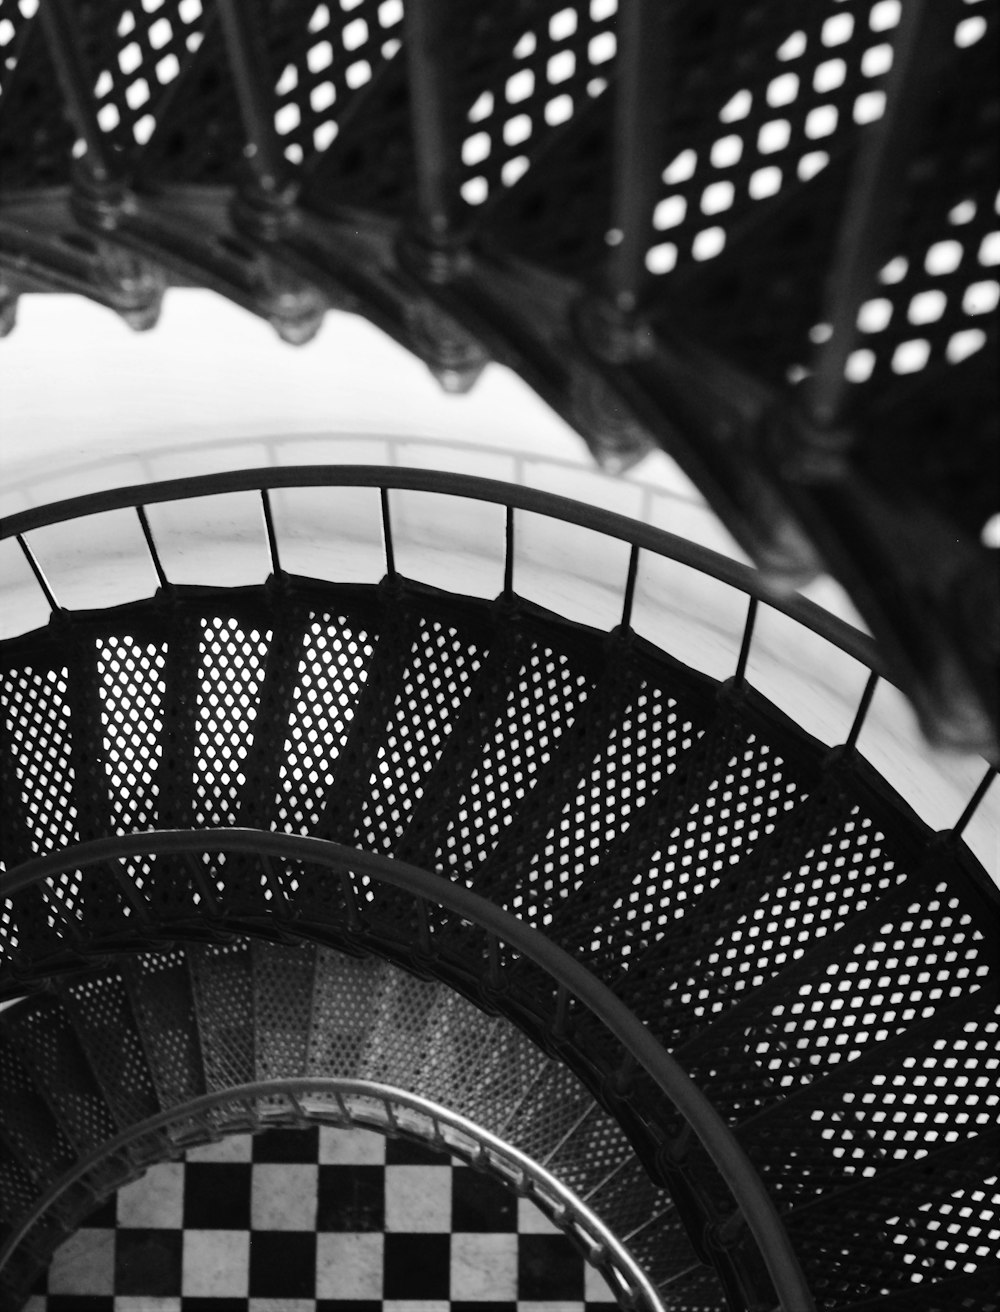 escada em espiral de metal preto na fotografia em tons de cinza